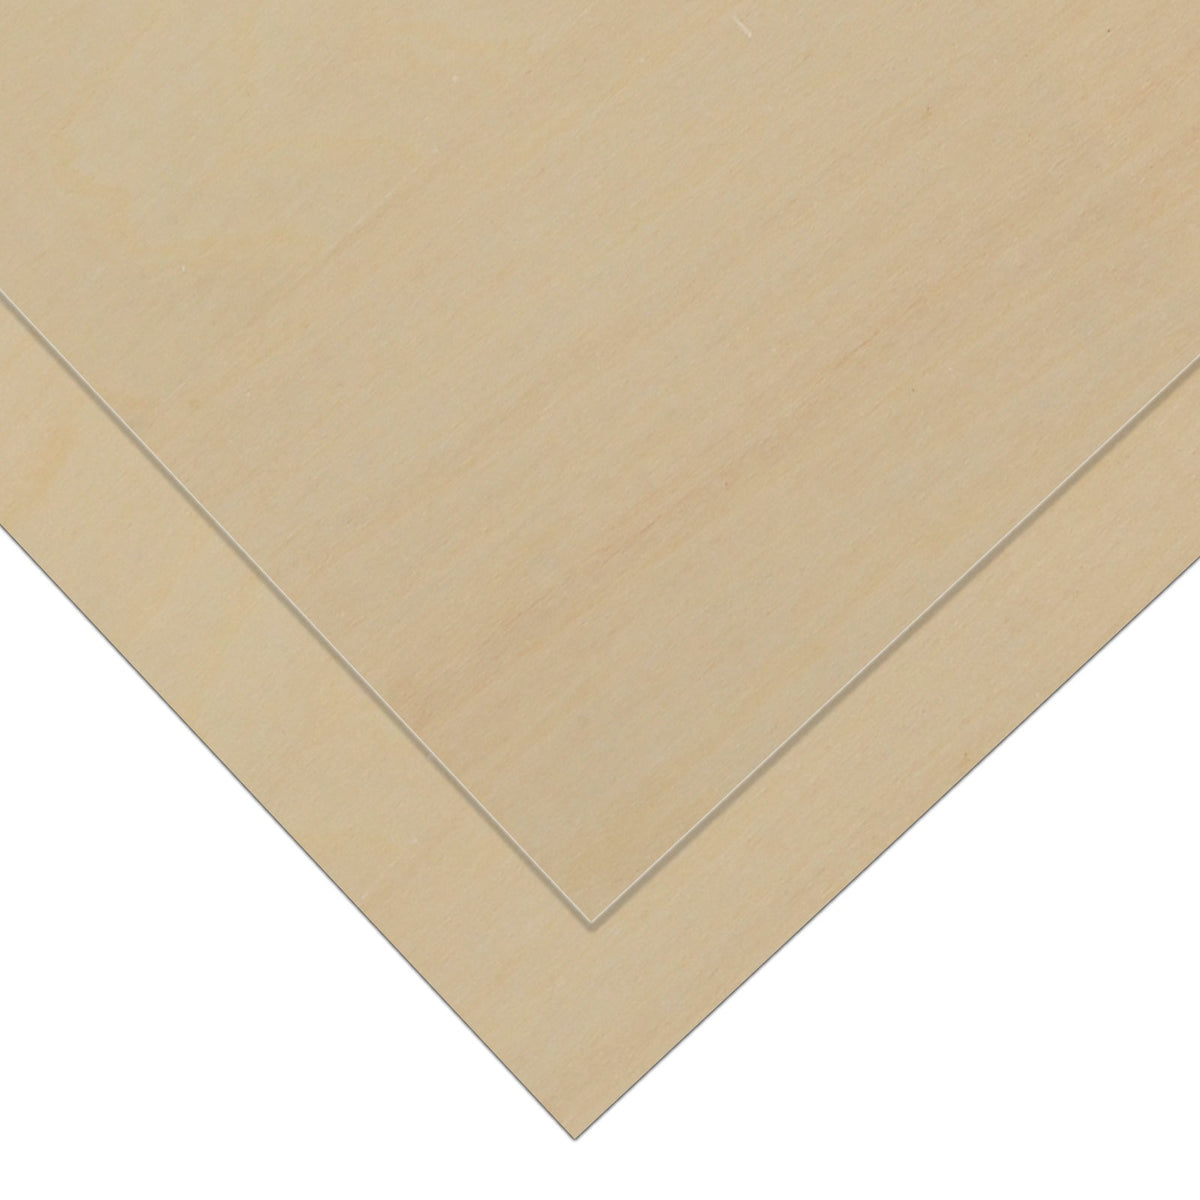 10 Stück A4-Sperrholzplatten, 3 mm Dicke (+/- 0,2 mm), Lindenholz-Sperrholz, 21 x 29,7 x 0,3 cm, zum Gravieren